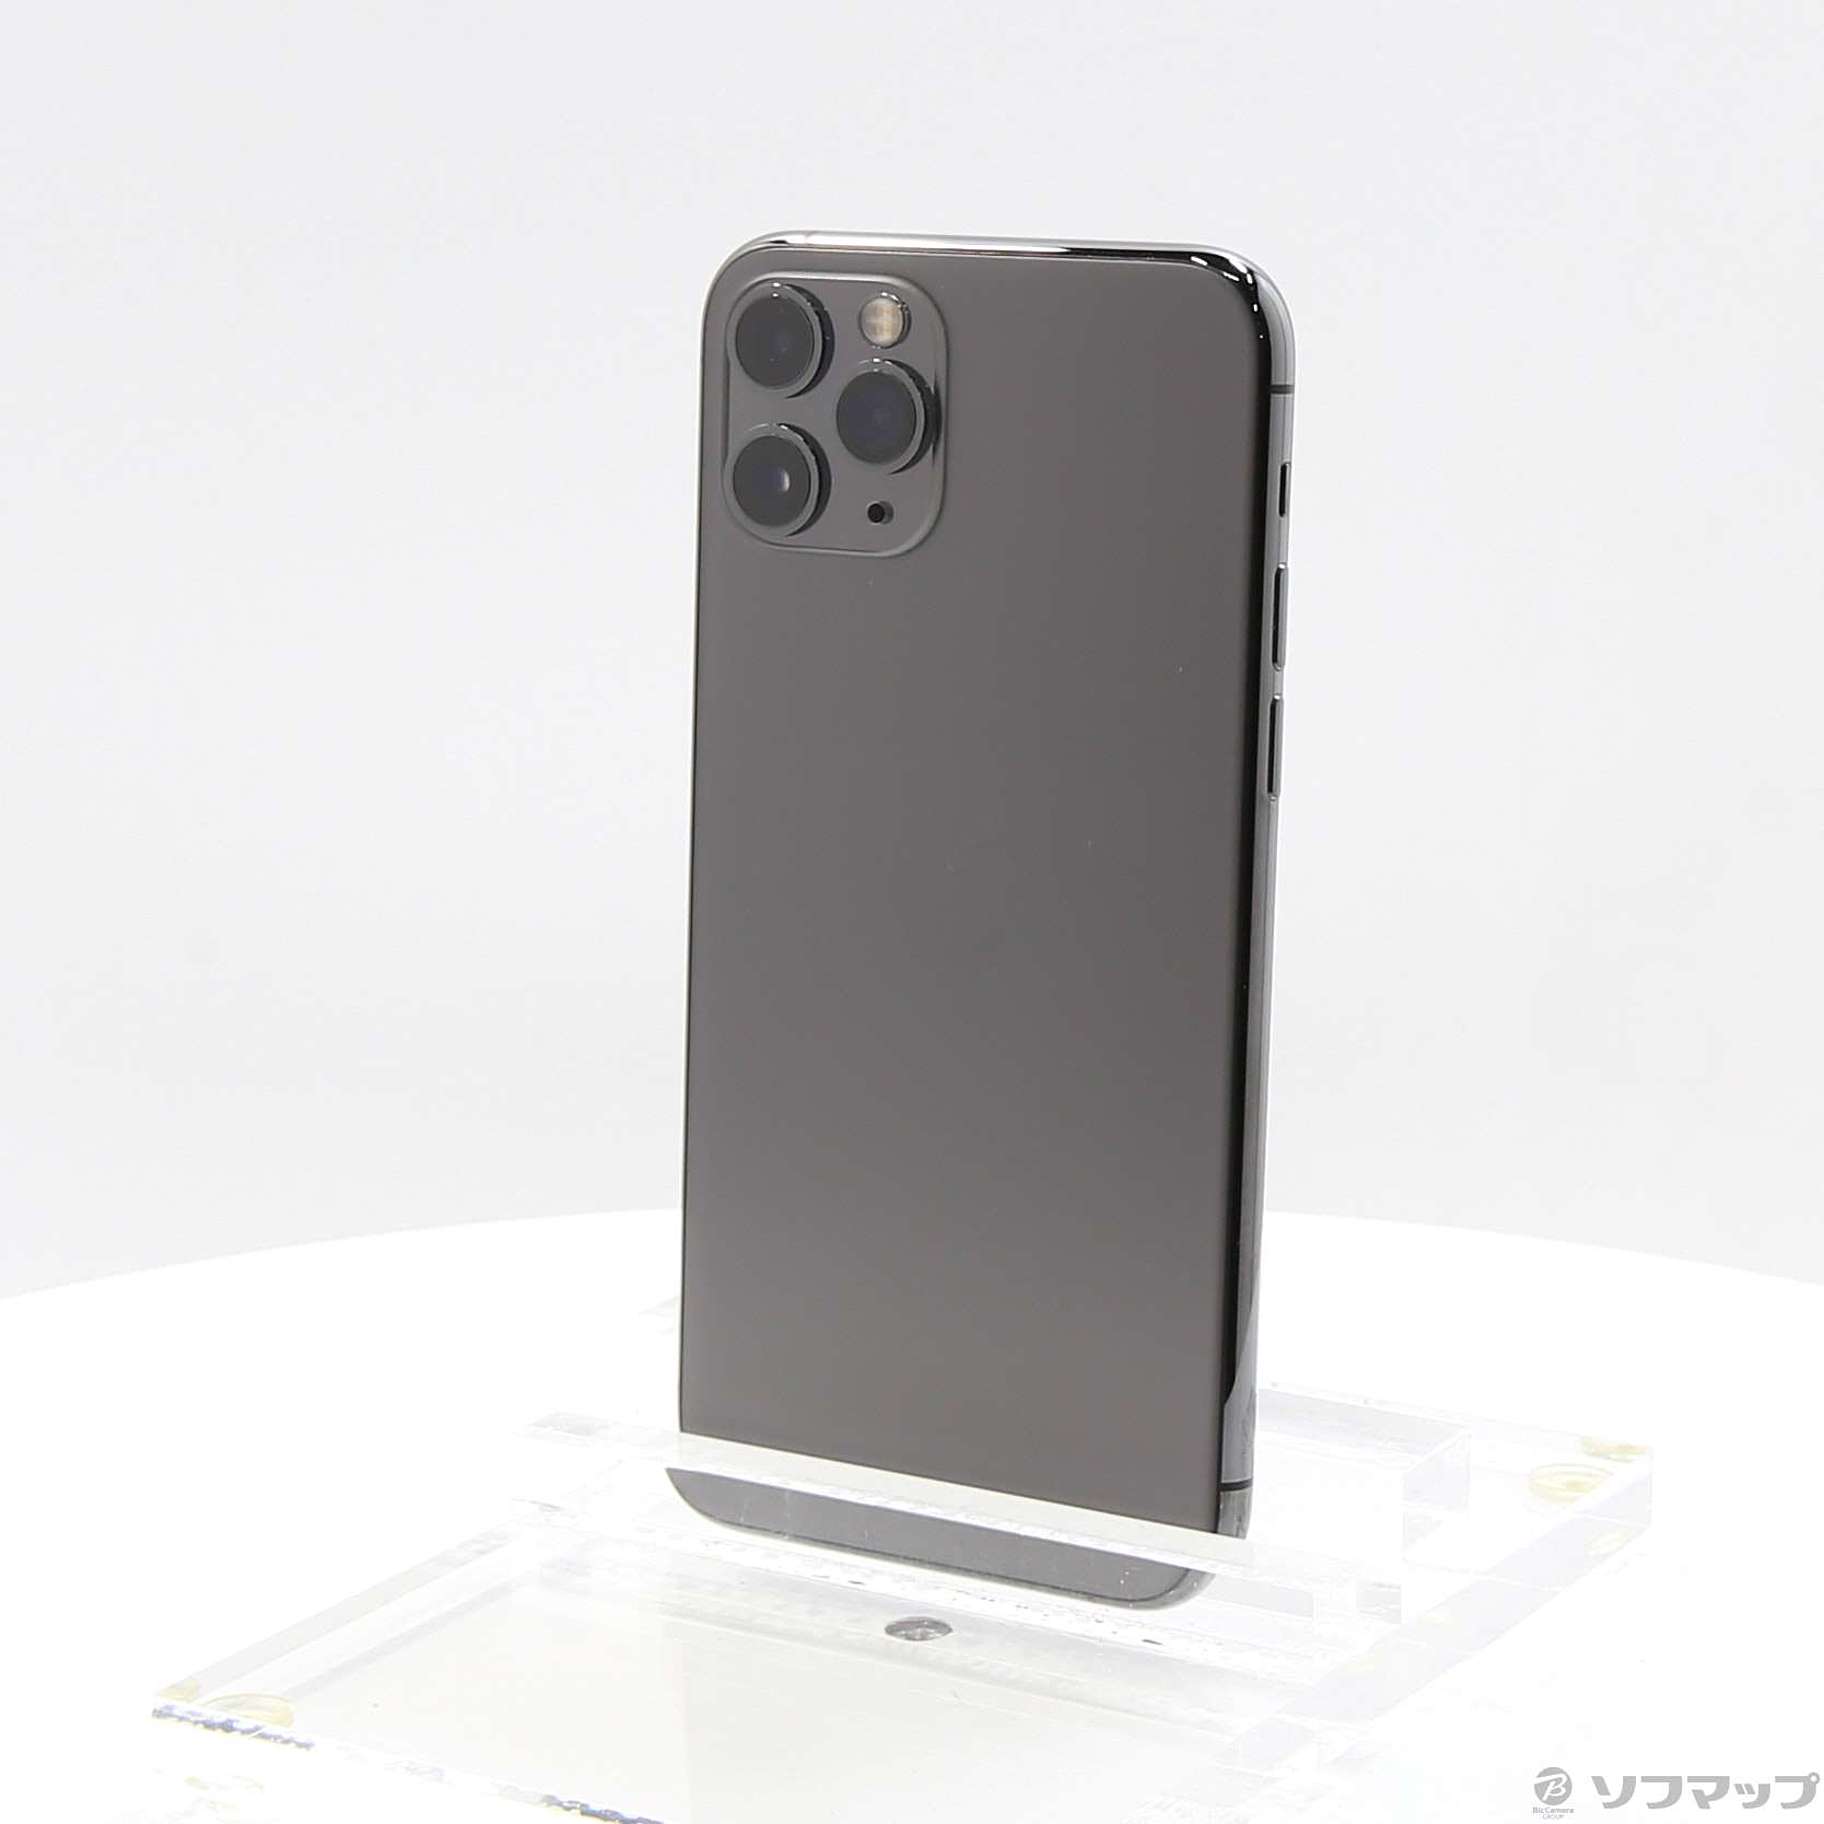 会員限定セール 新品未使用 iPhone 11 Pro スペースグレー256GB | tonky.jp